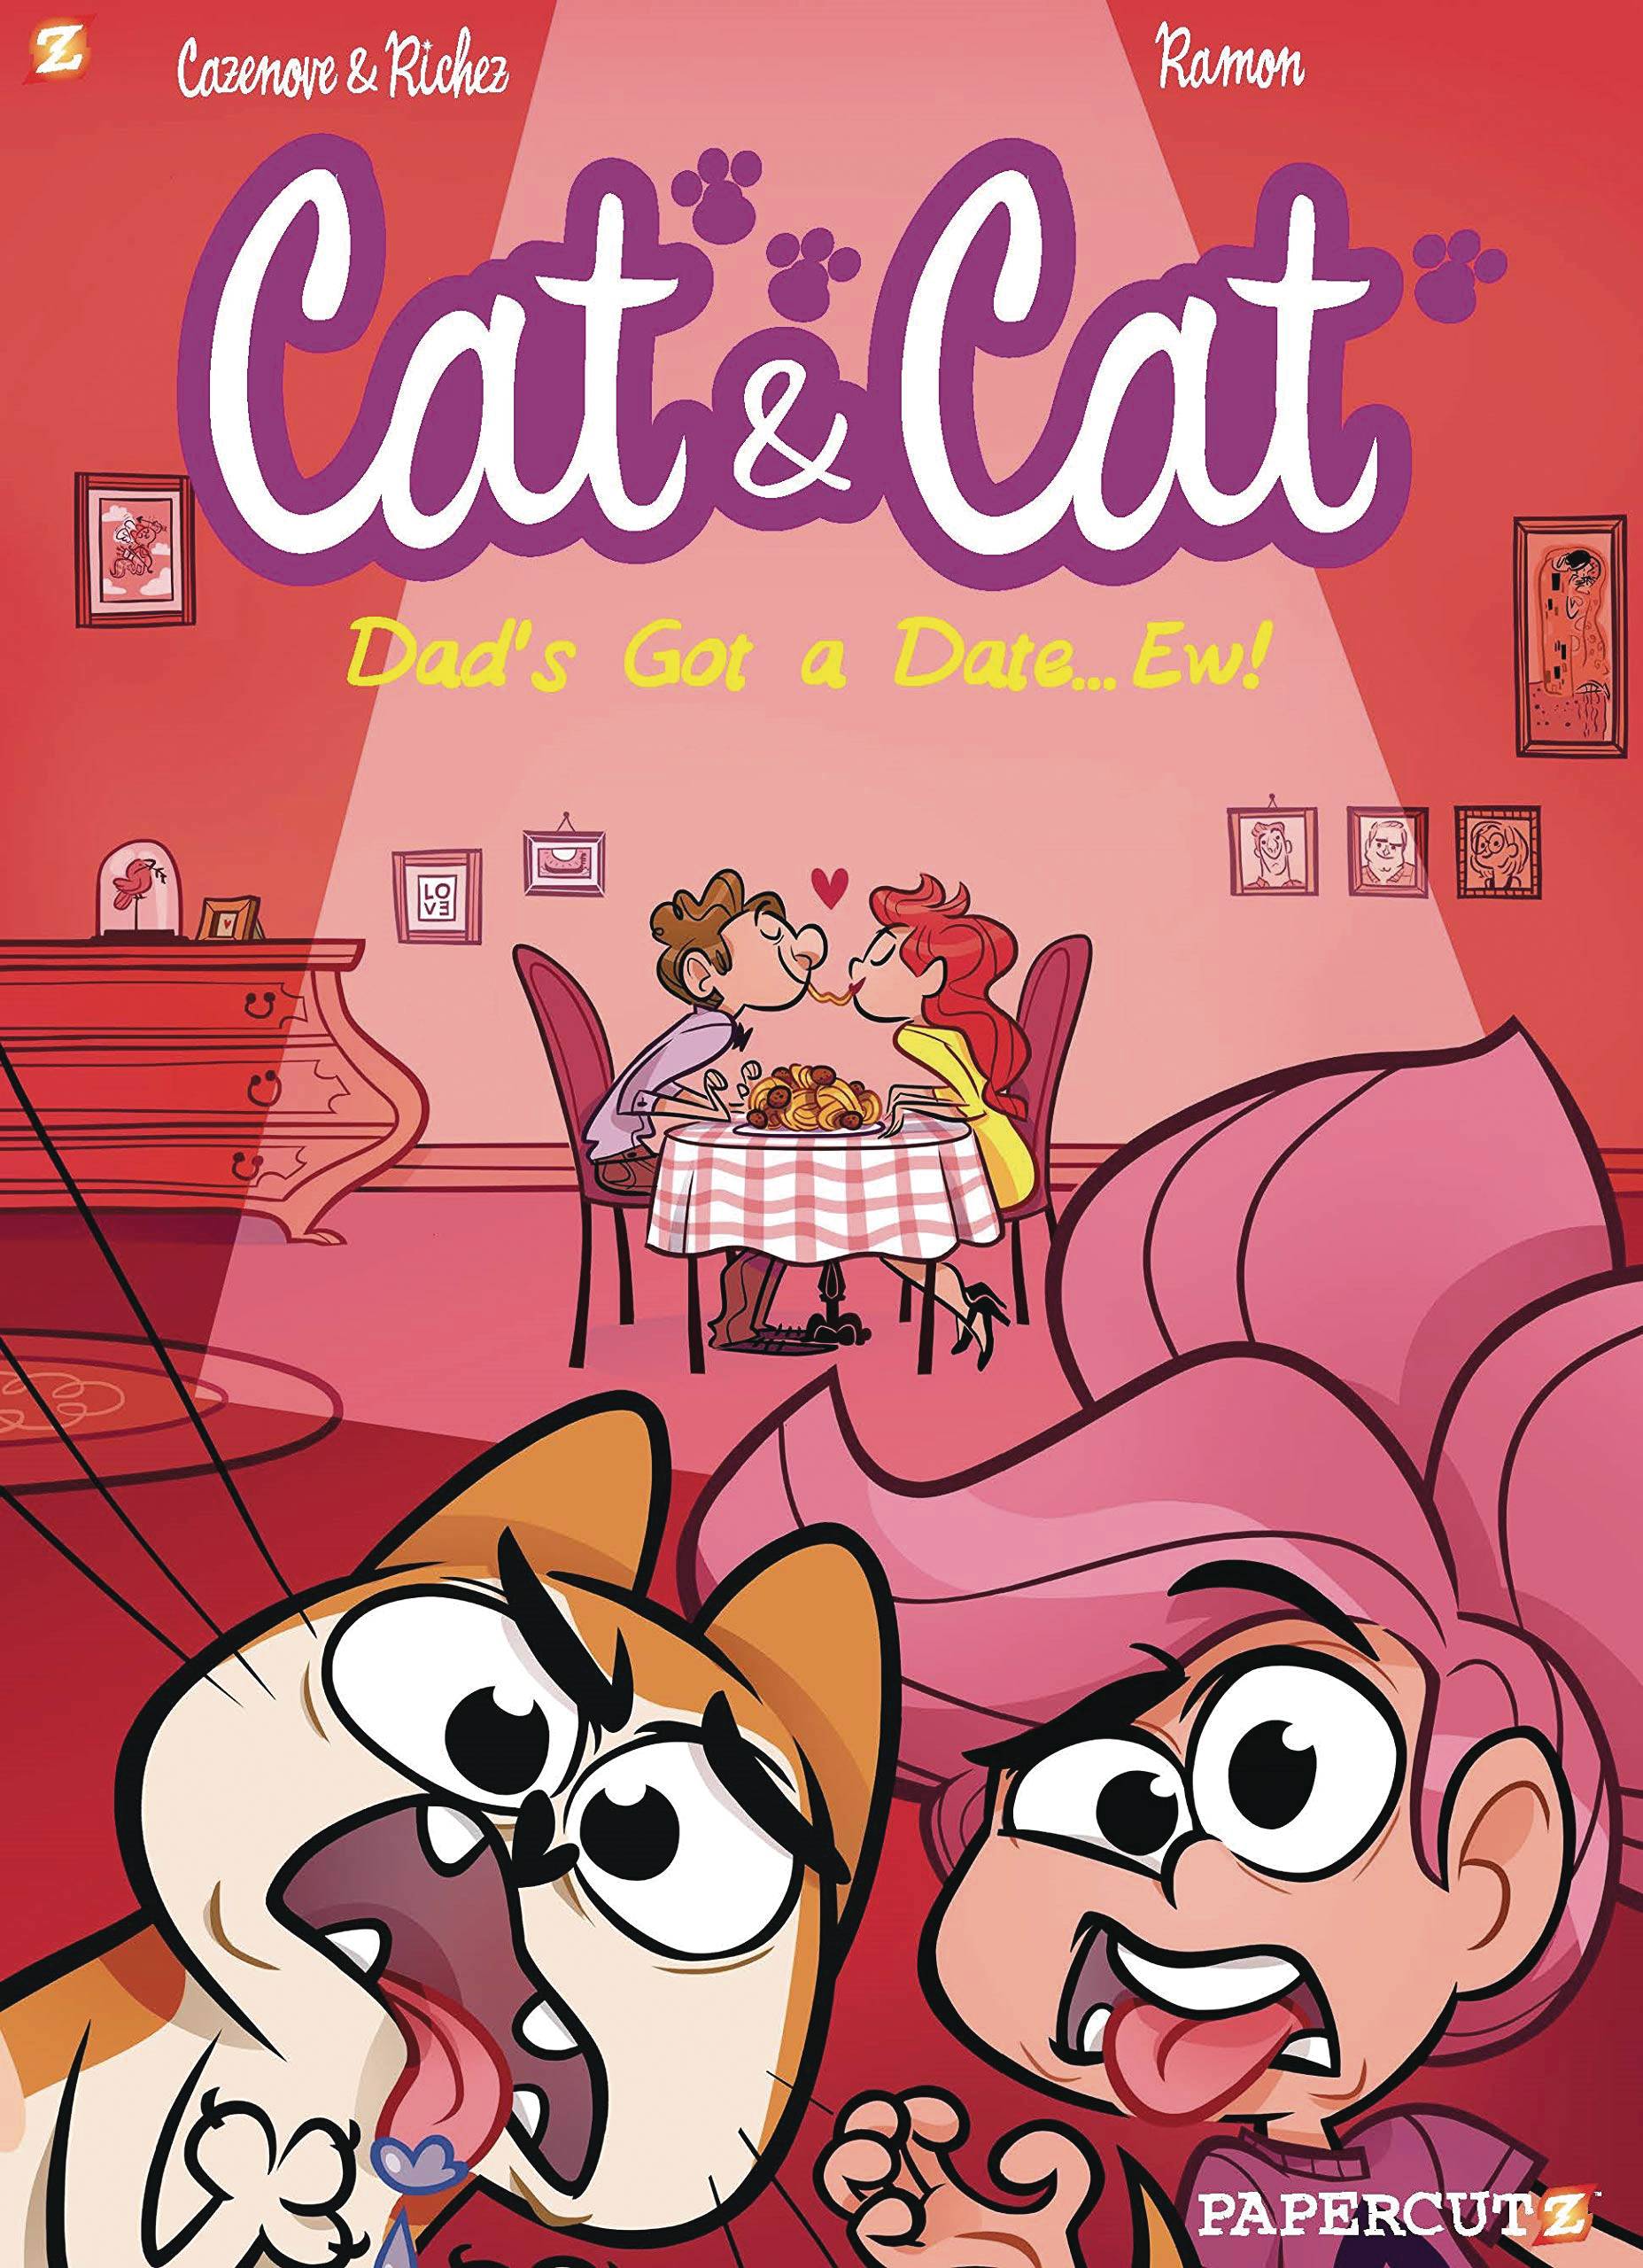 CAT & CAT TP 03 MY DADS GOT A DATE EW!